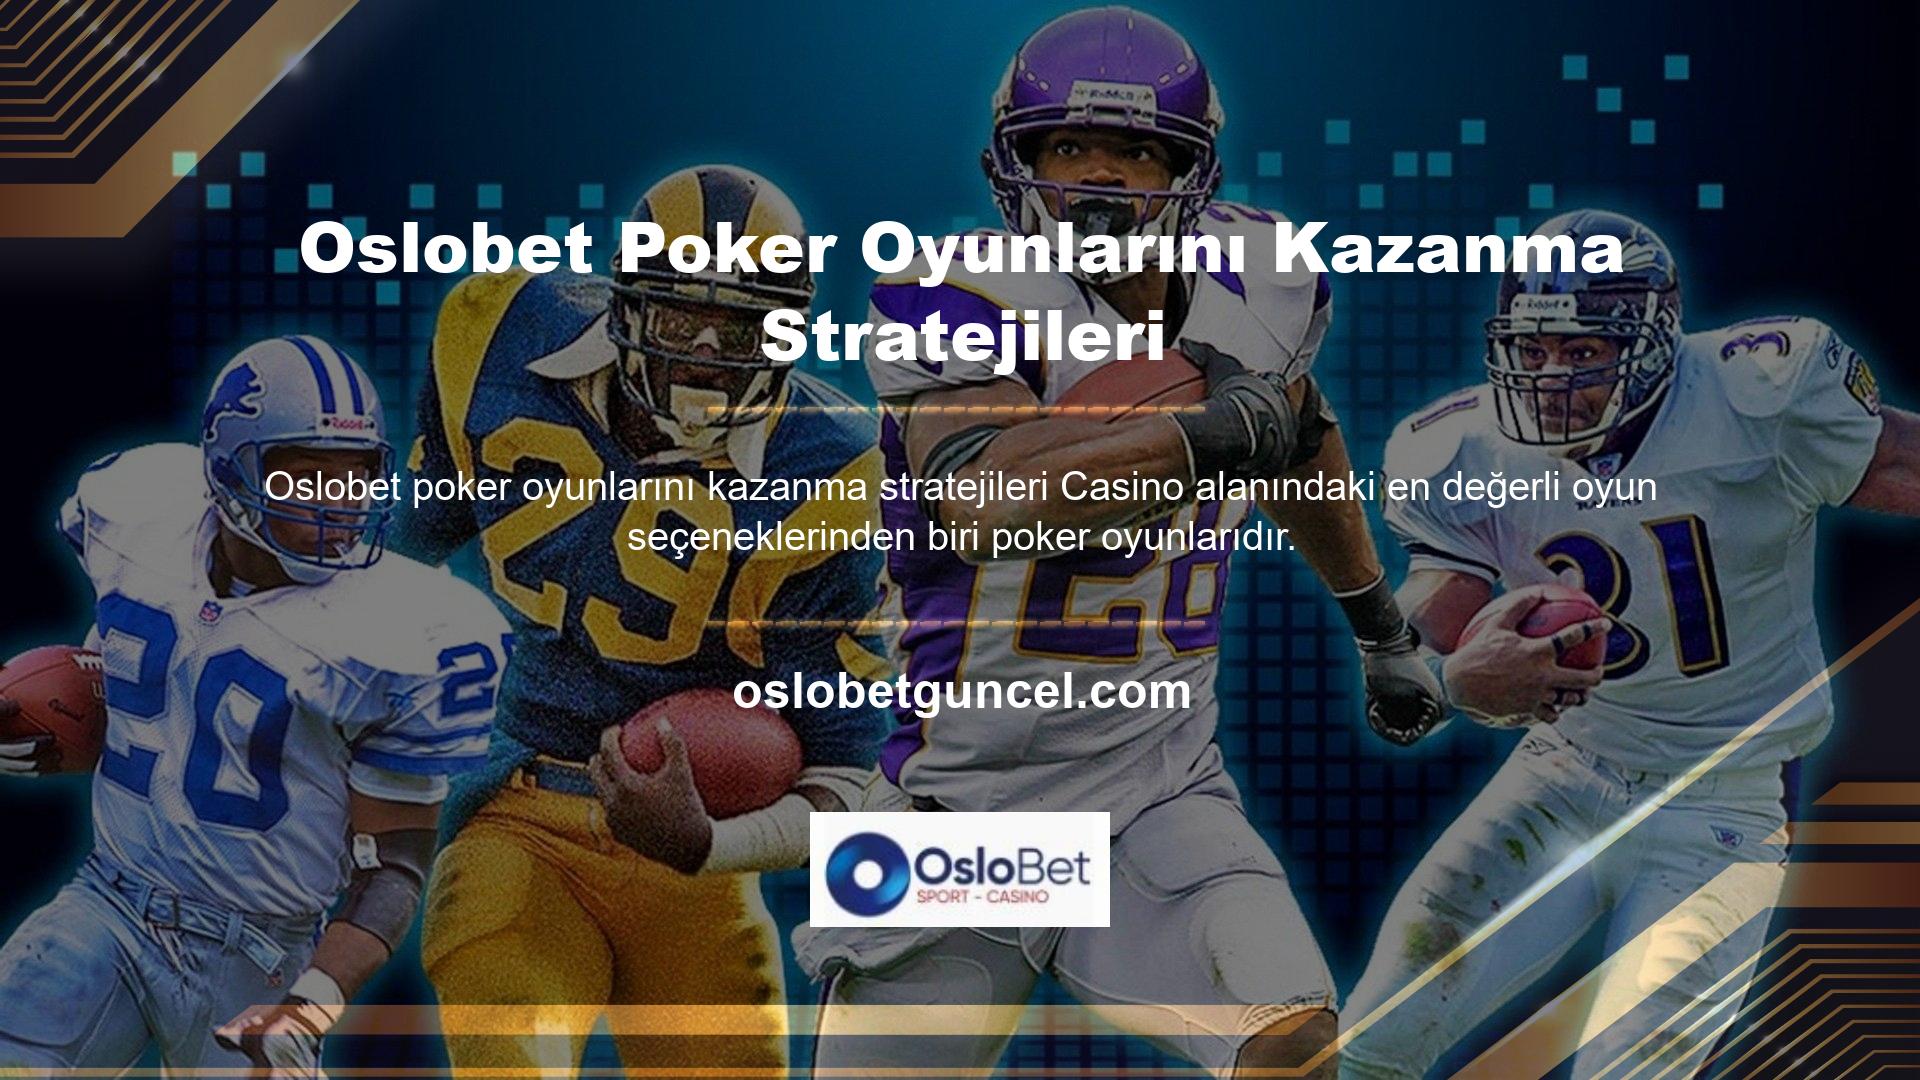 Bu nedenle gerçek para kazanabileceğiniz rahat bir sanal poker ortamı oluşturan Oslobet poker oyununun kazanma taktikleri ile de ilgileniyorum